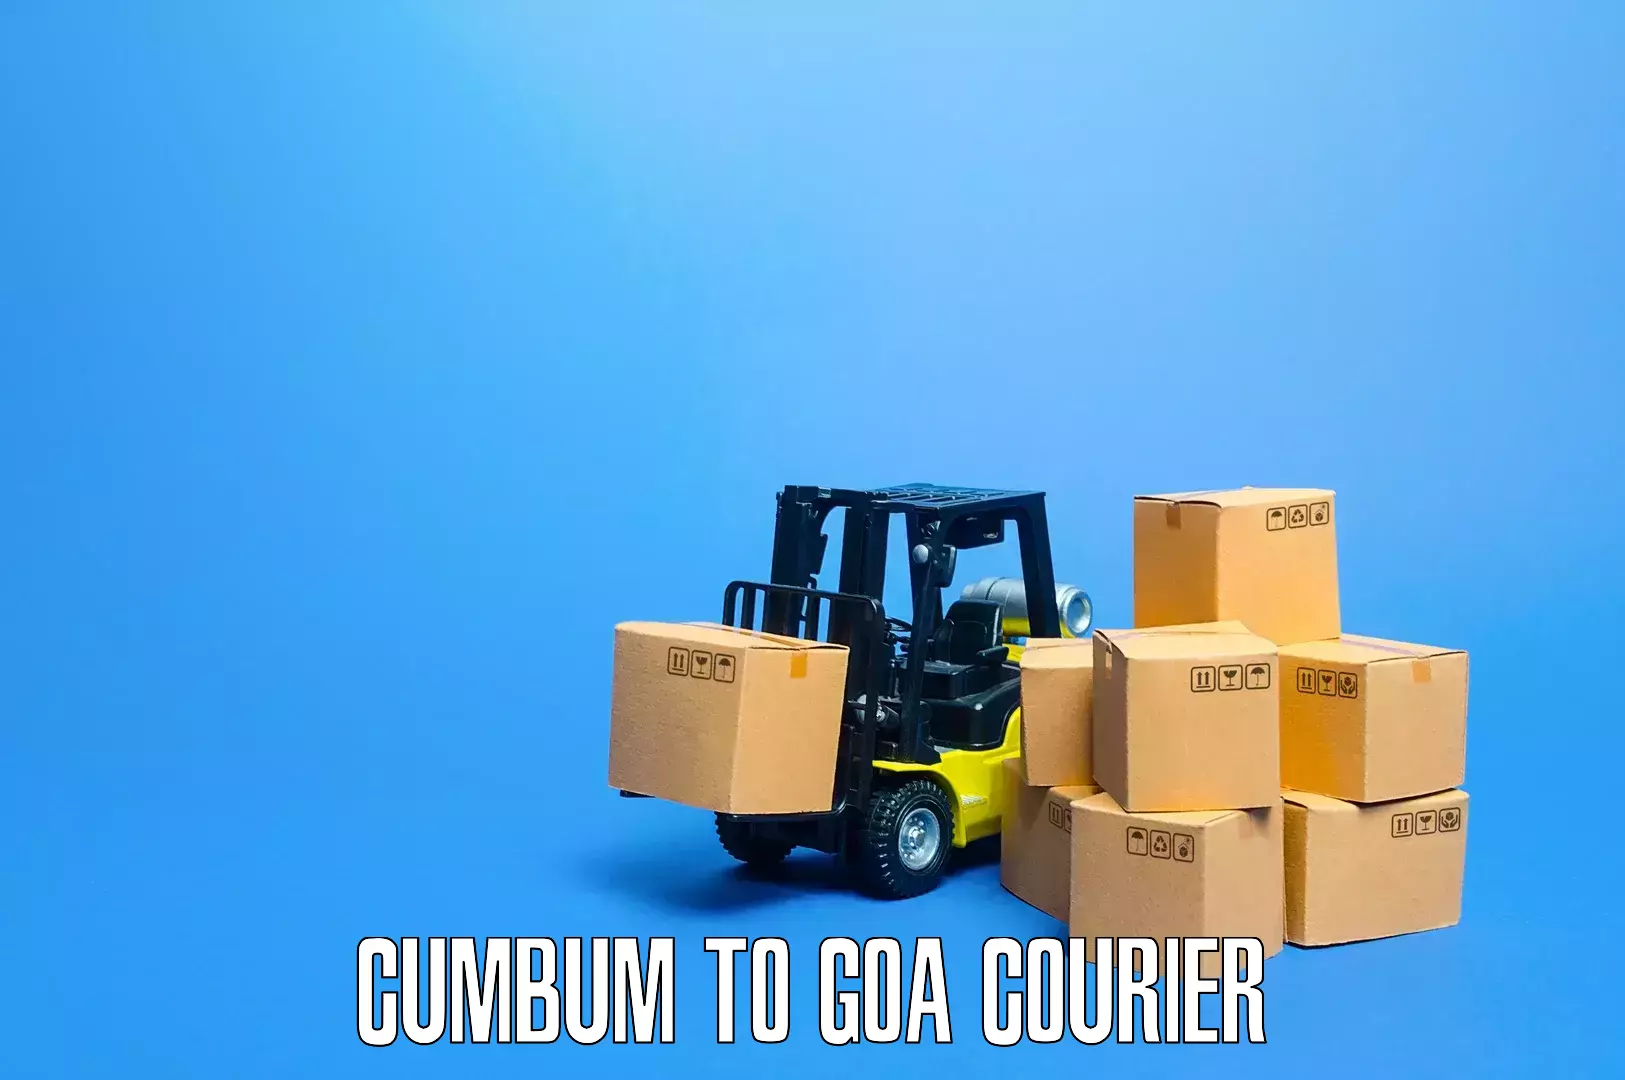 Home furniture relocation in Cumbum to South Goa